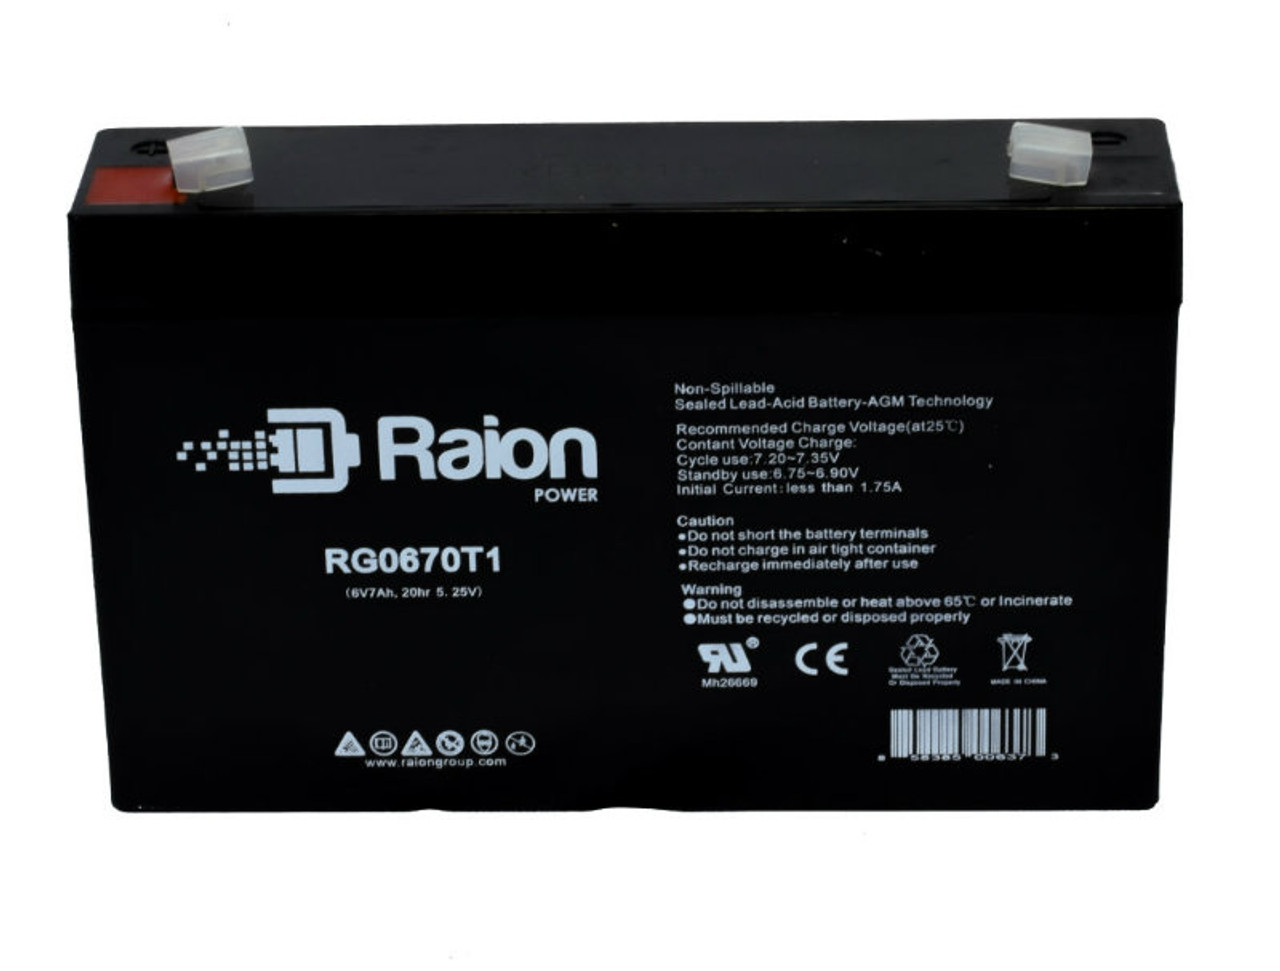 Raion Power RG0670T1 SLA Battery for Peak Energy PK6V7.2F1 OEM Battery